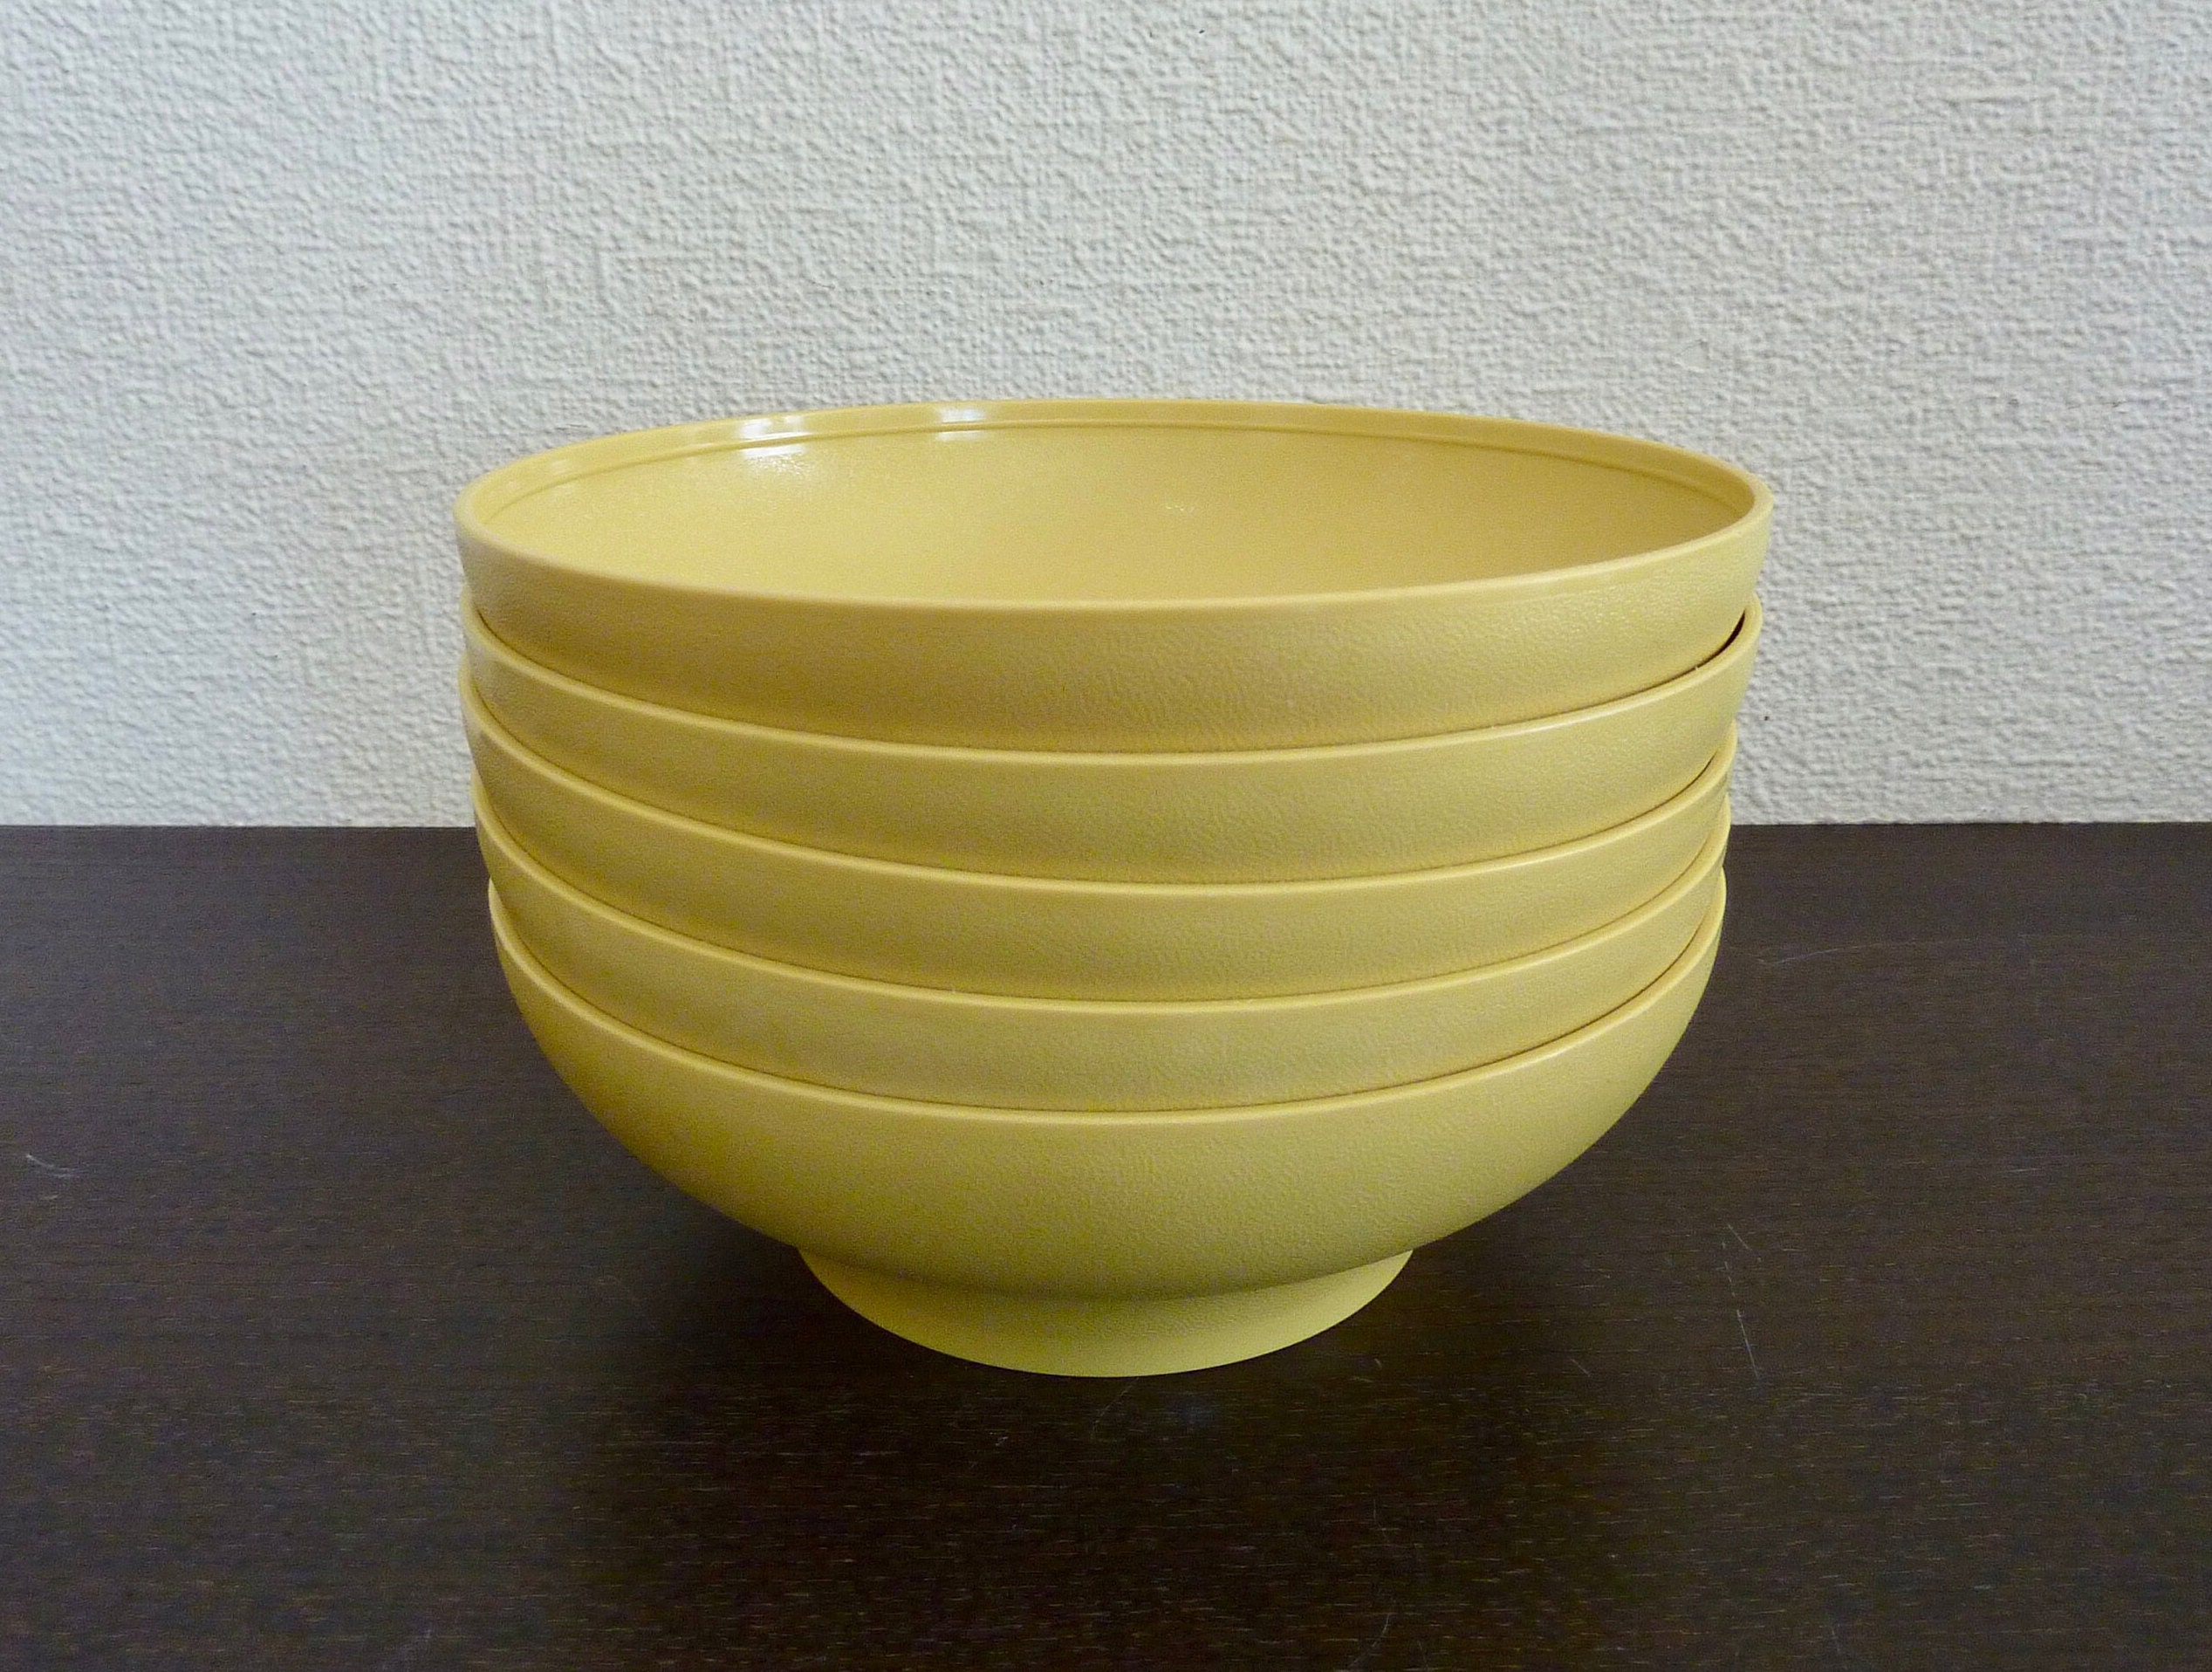 Vintage Harvest Gold Tupperware Bowls Retro Indoor Outdoor Dish Serving Ware Model 890-32 Set of 5 Cereal Bowls